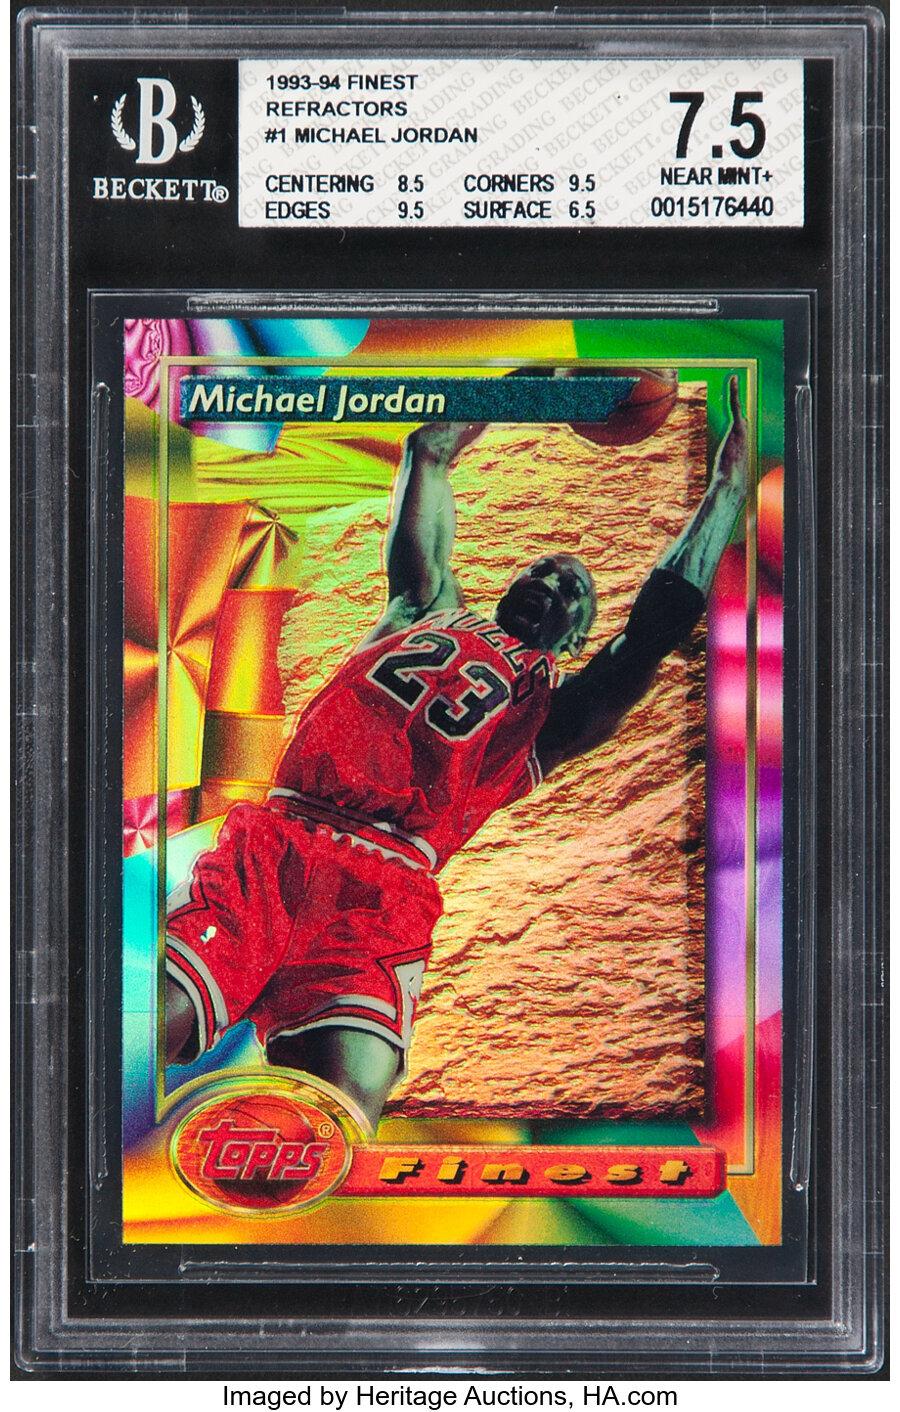 1993 Topps Finest Michael Jordan (Refractor) #1 BGS NM+ 7.5